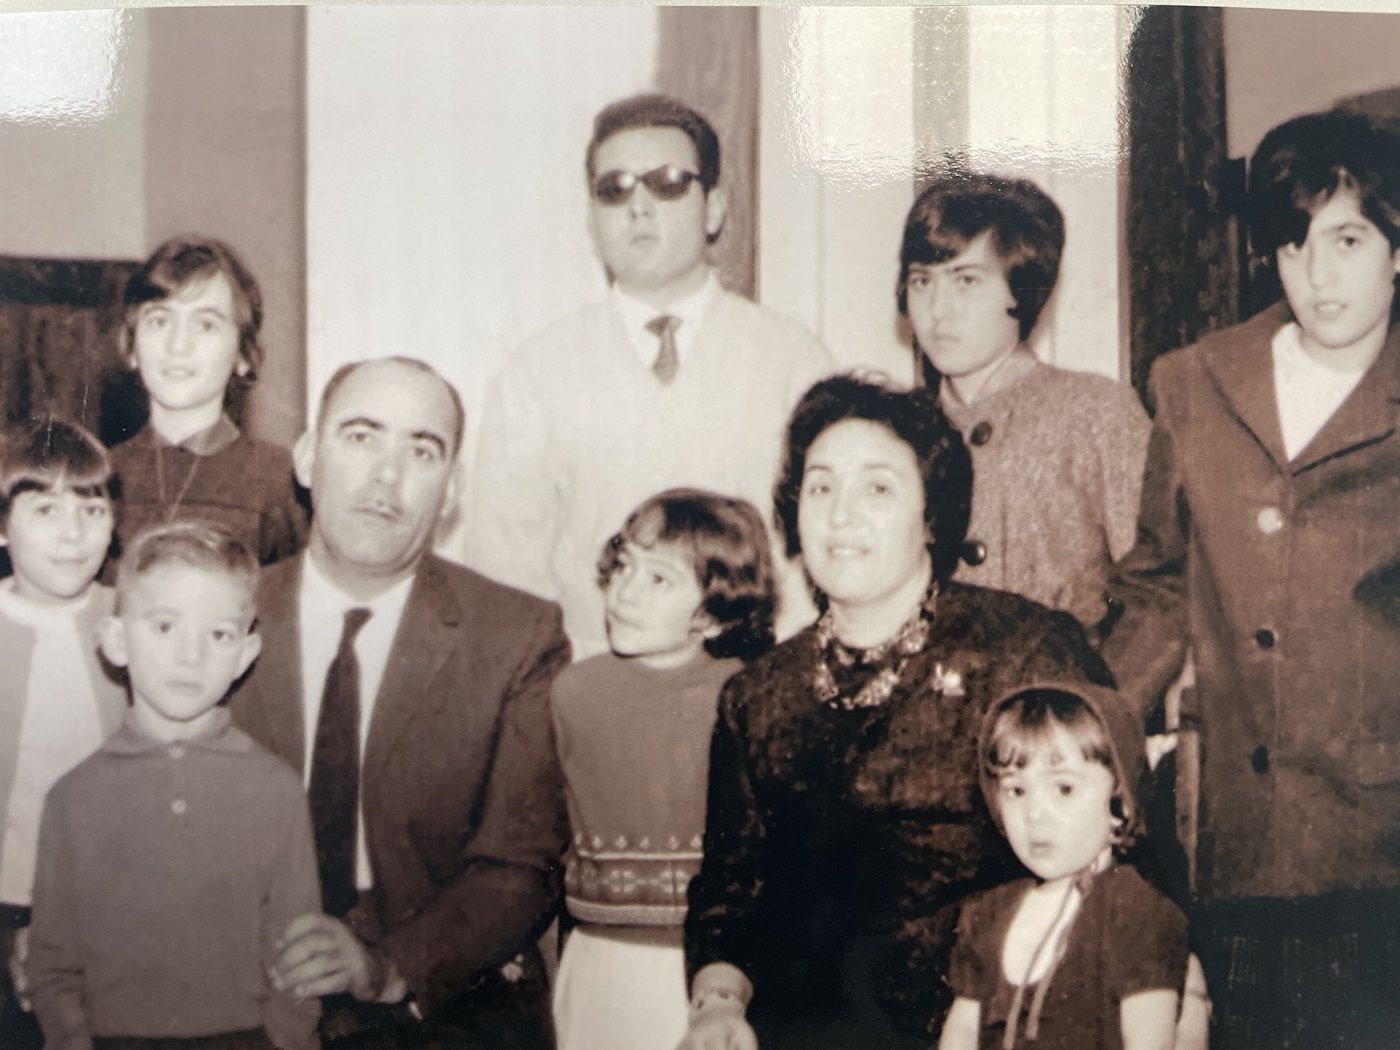 La familia Ferrer en 1962. Imagen facilitada por la famila.